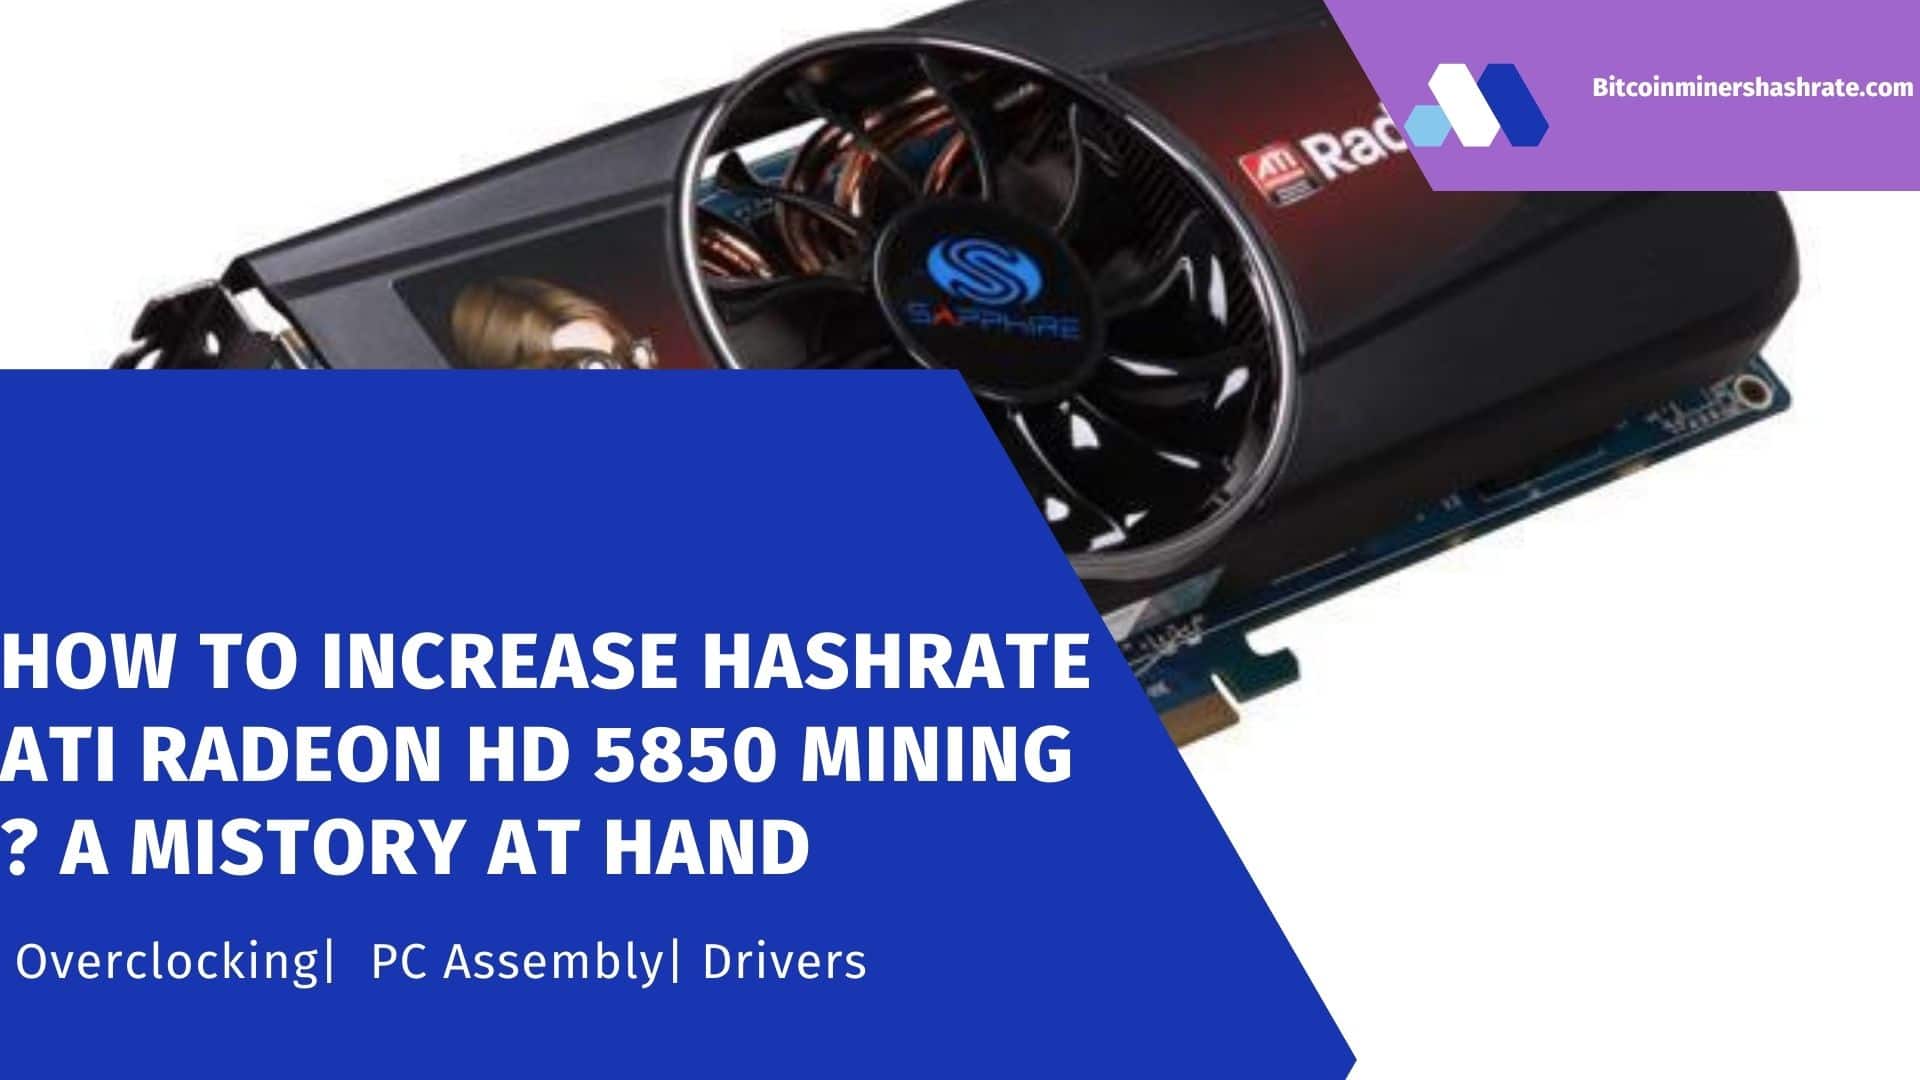 How to Increase Hashrate ATI Radeon HD 5850 Mining